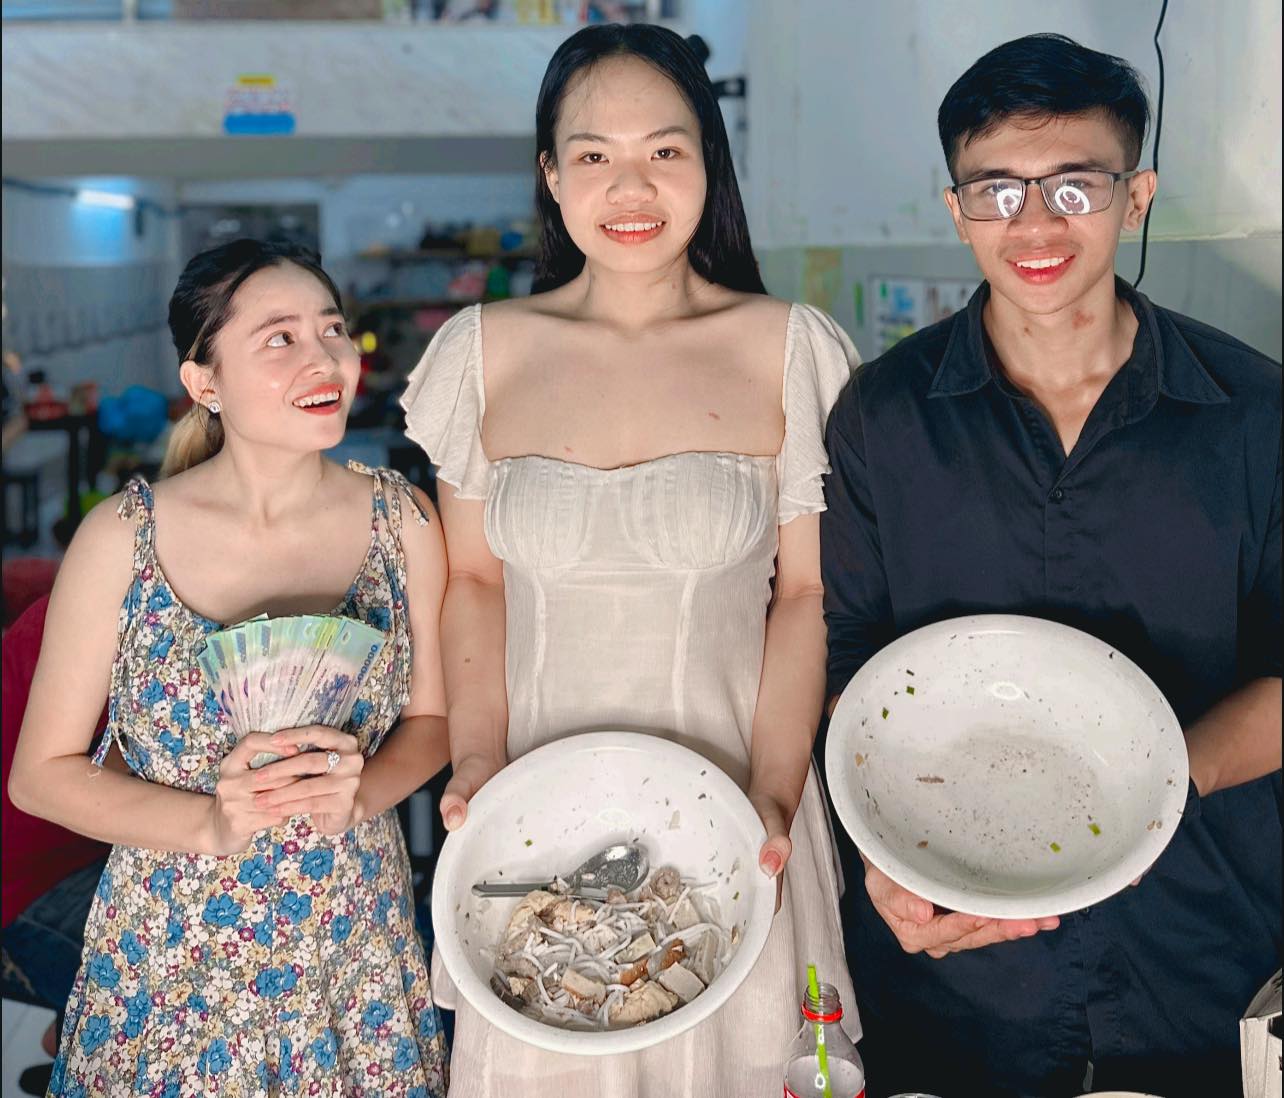 Quán ăn TP HCM tổ chức cuộc thi ăn 2 tô bún chả sứa khổng lồ nhận thưởng 30 triệu đồng và cái kết  - Ảnh 4.